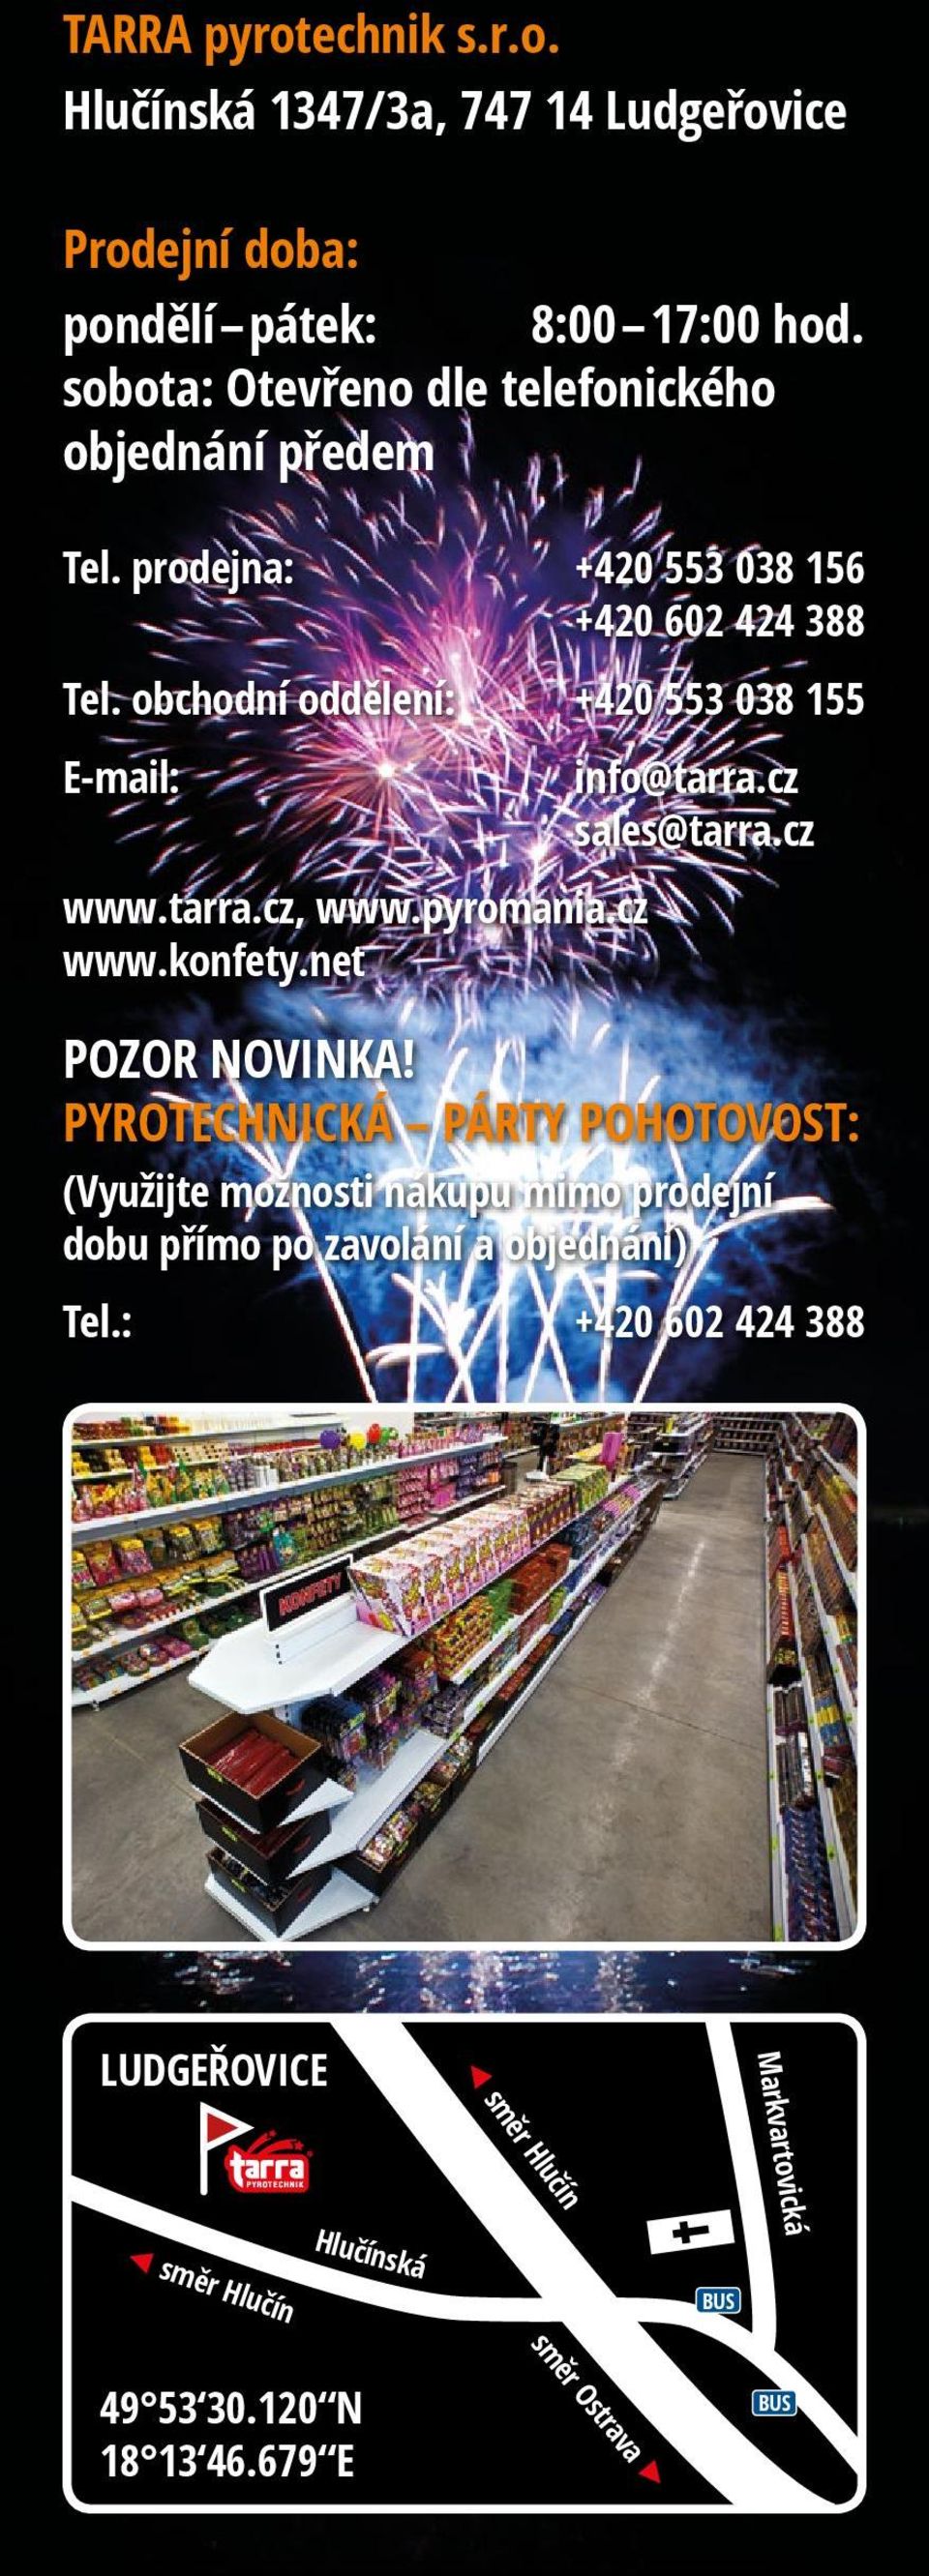 obchodní oddělení: +420 553 038 155 E-mail: info@tarra.cz sales@tarra.cz www.tarra.cz, www.pyromania.cz www.konfety.net POZOR NOVINKA!